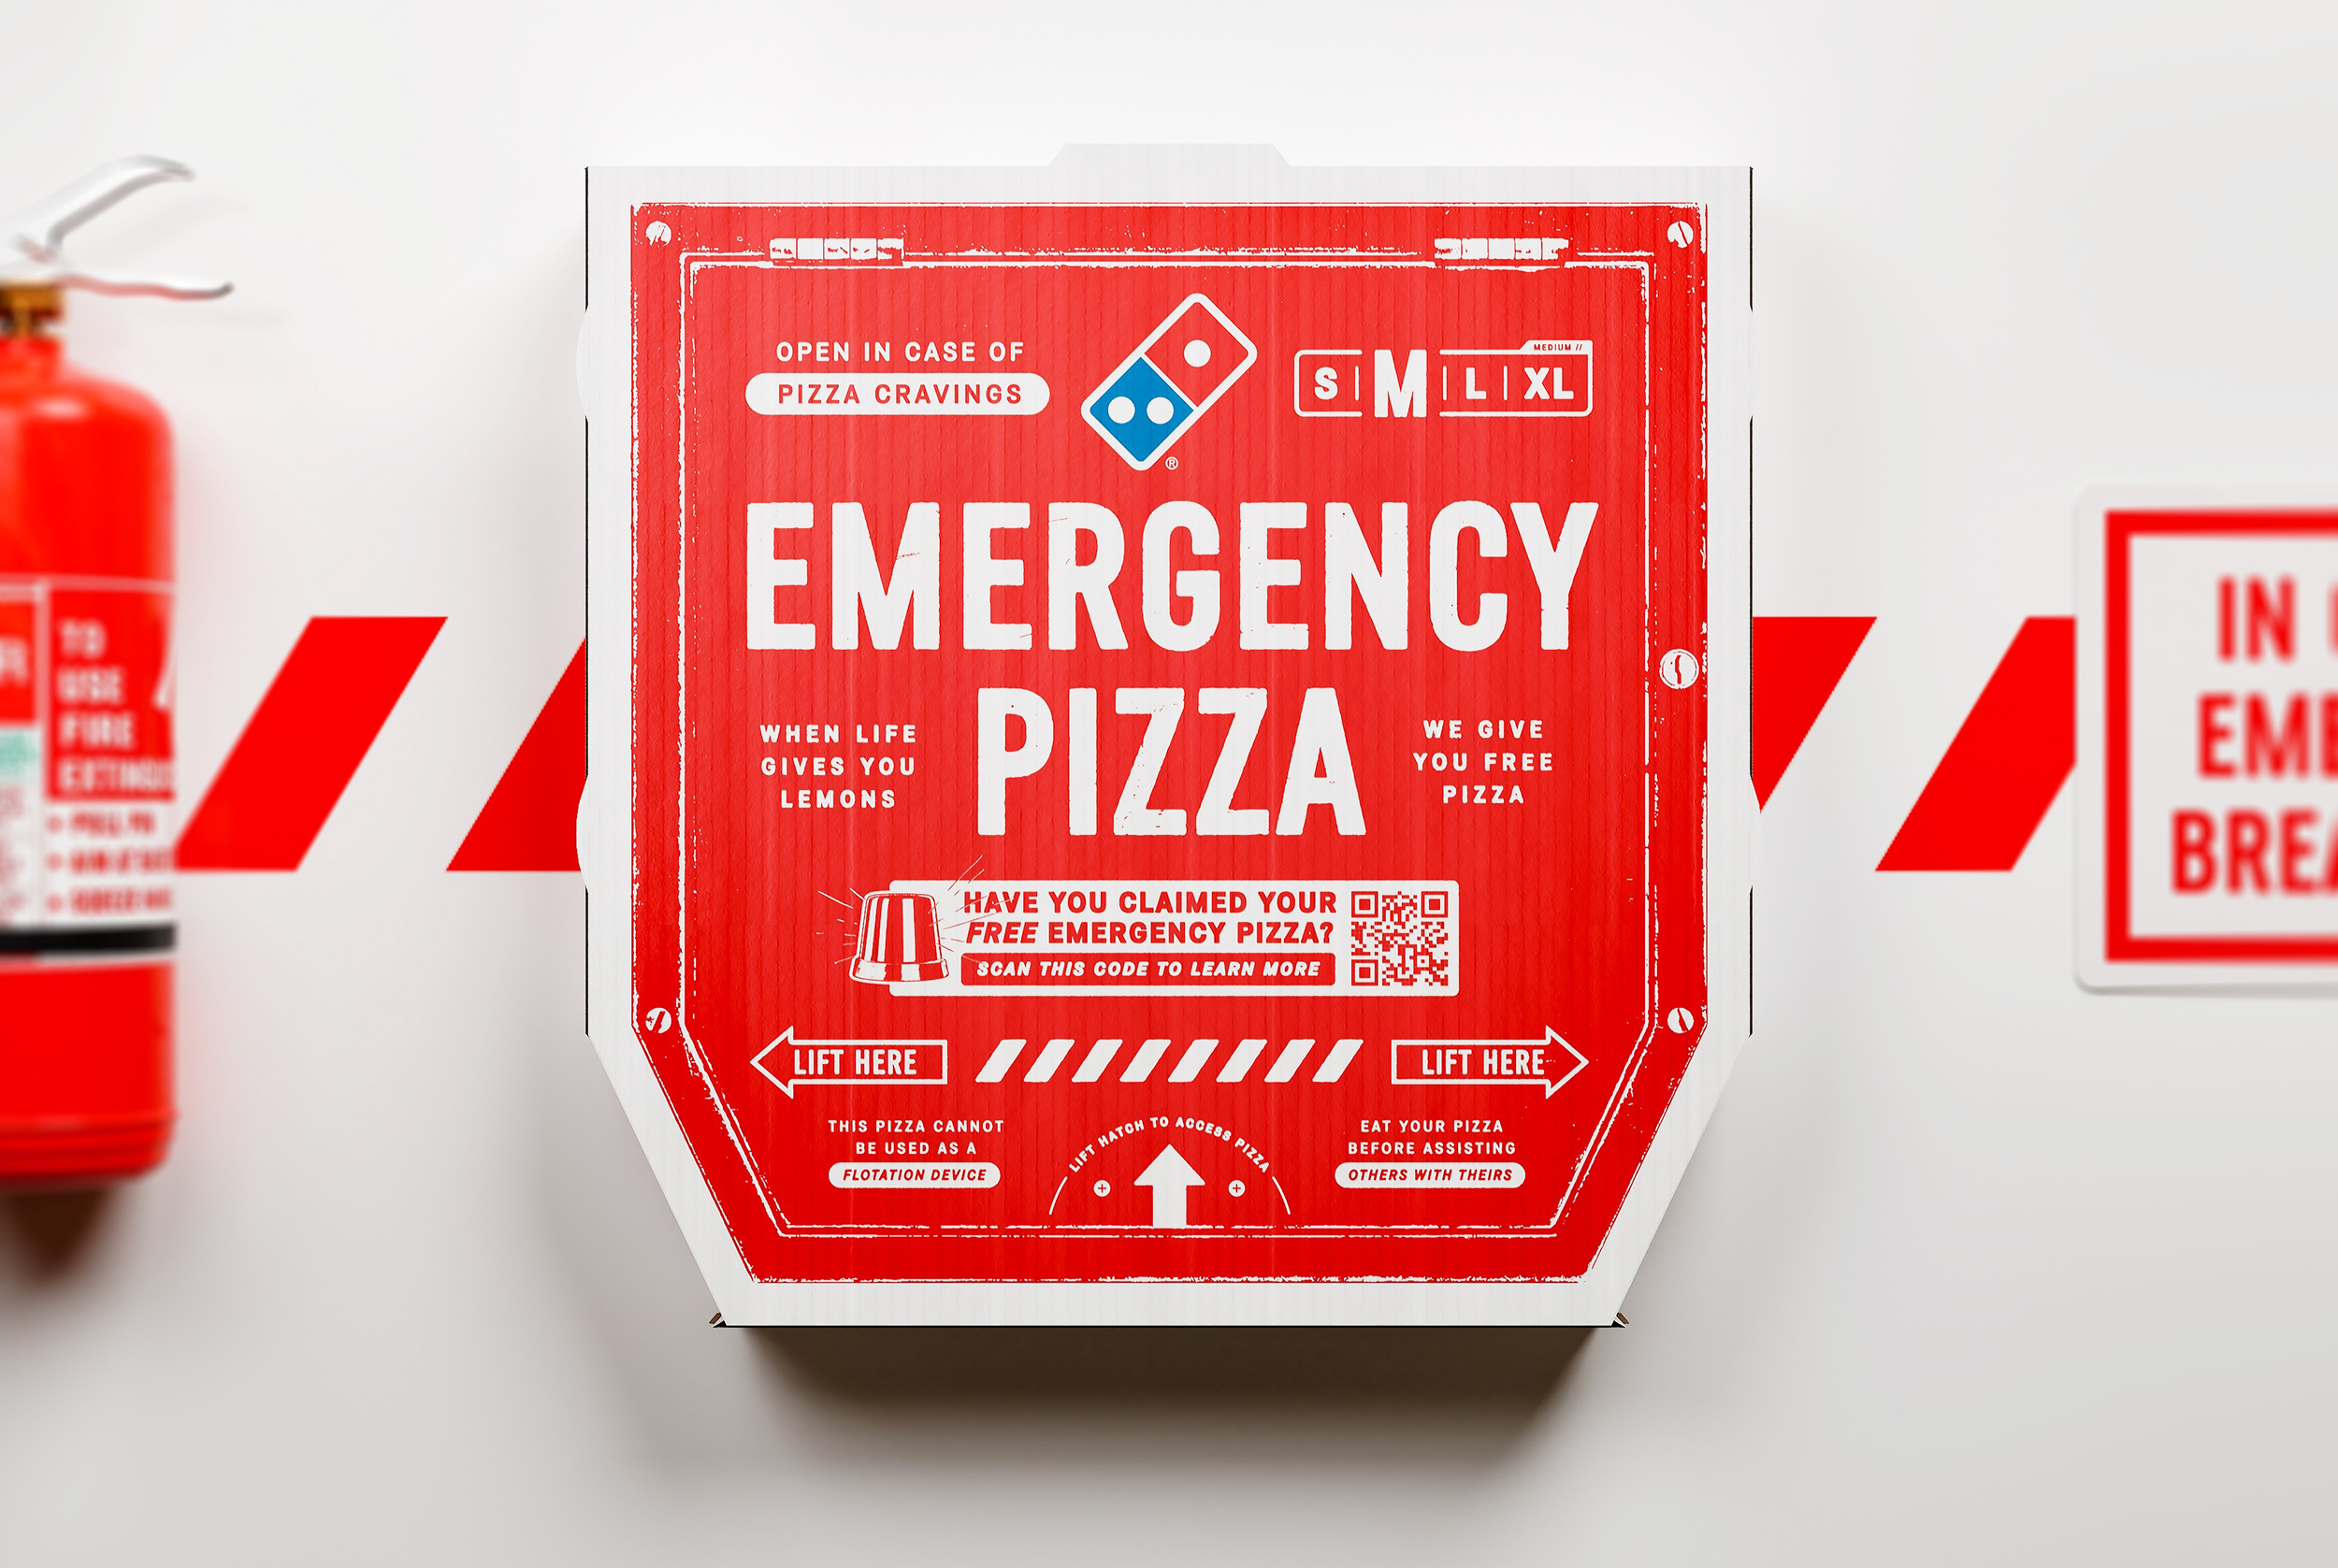 Το Domino's 'Emergency Pizza' ξεκίνησε για εκείνες τις απροσδόκητες στιγμές!